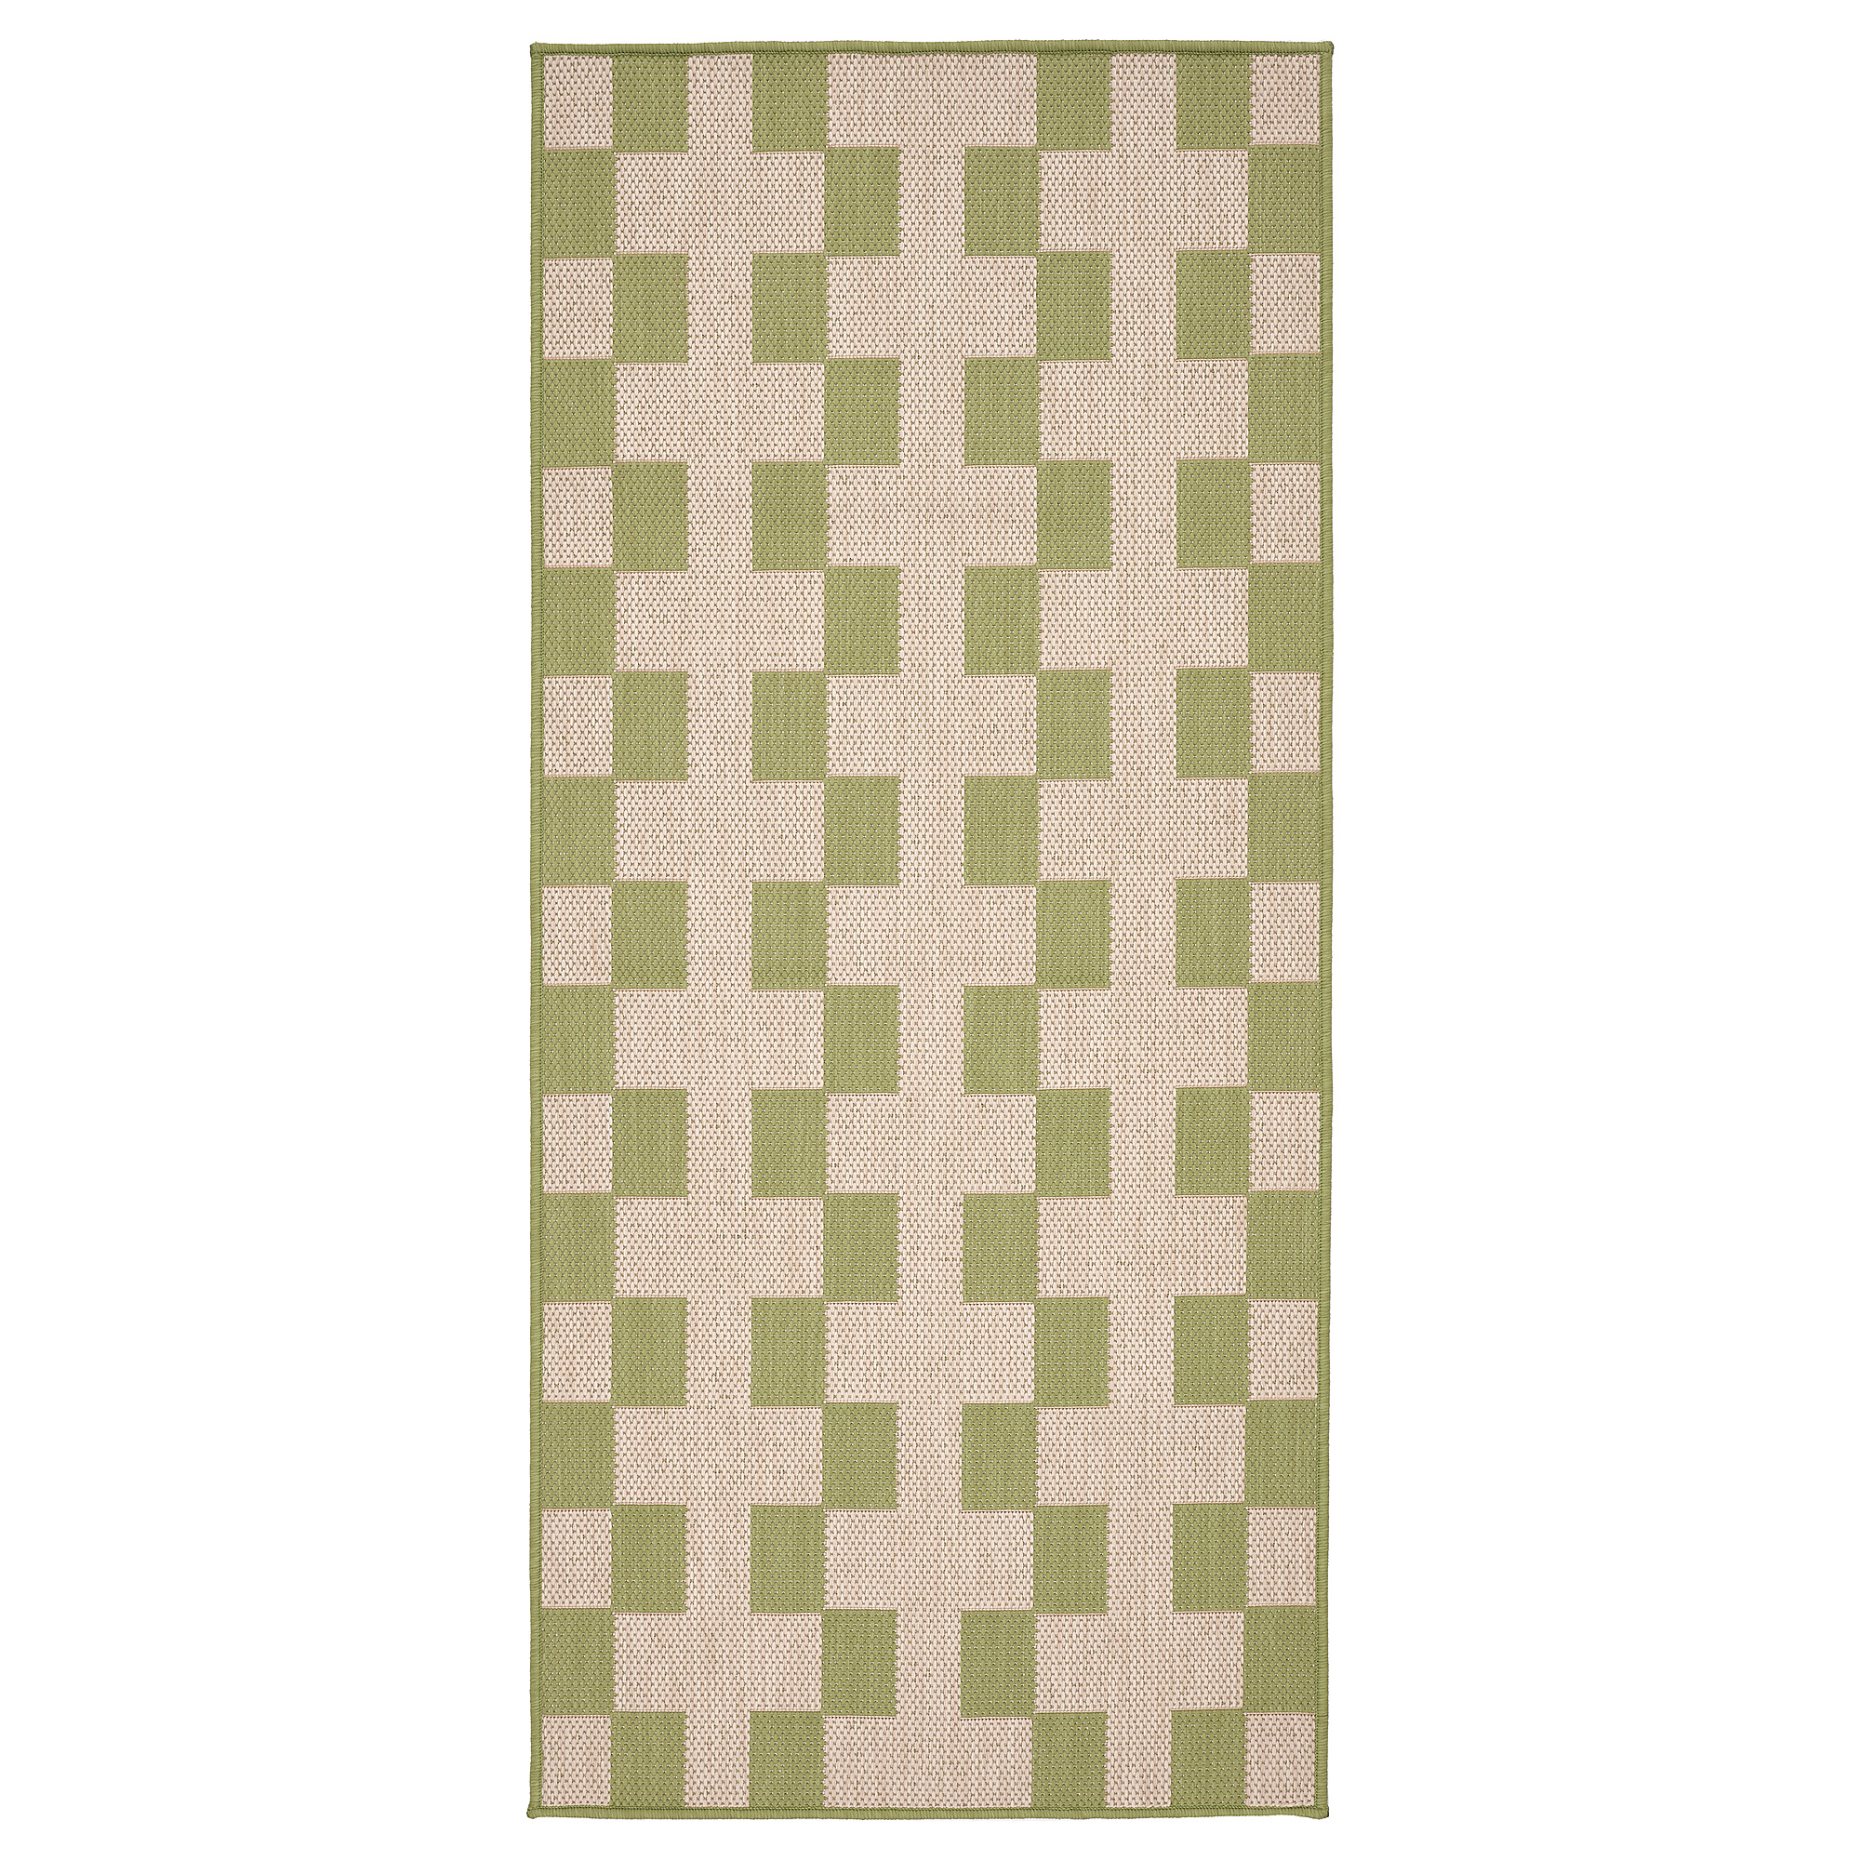 GANGSTIG, kitchen mat flatwoven, 70x160 cm, 305.781.46